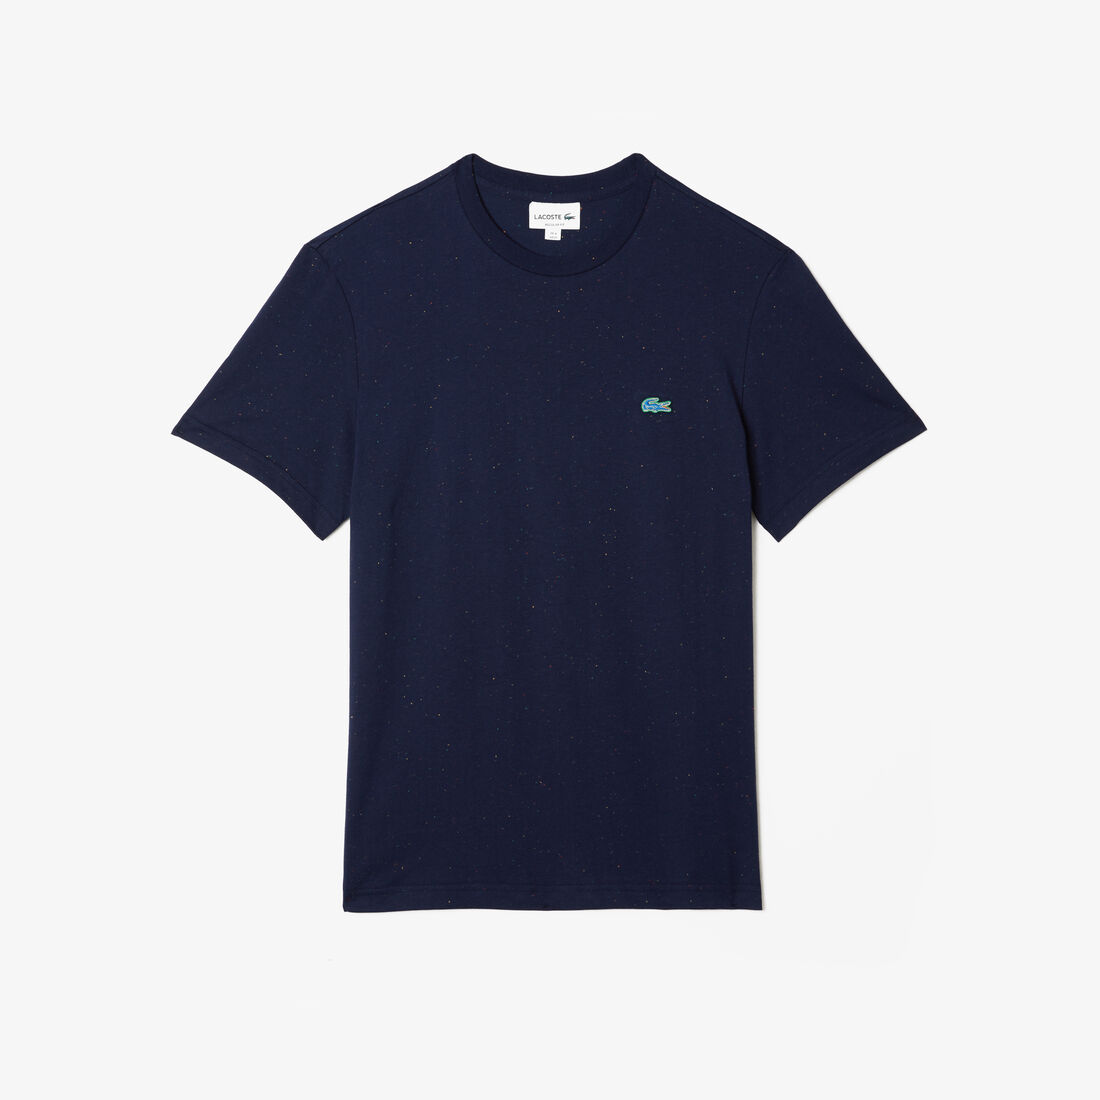 Lacoste Regular Fit Speckled Print Baumwoll Jersey T-shirts Herren Navy Blau | IVXG-73615